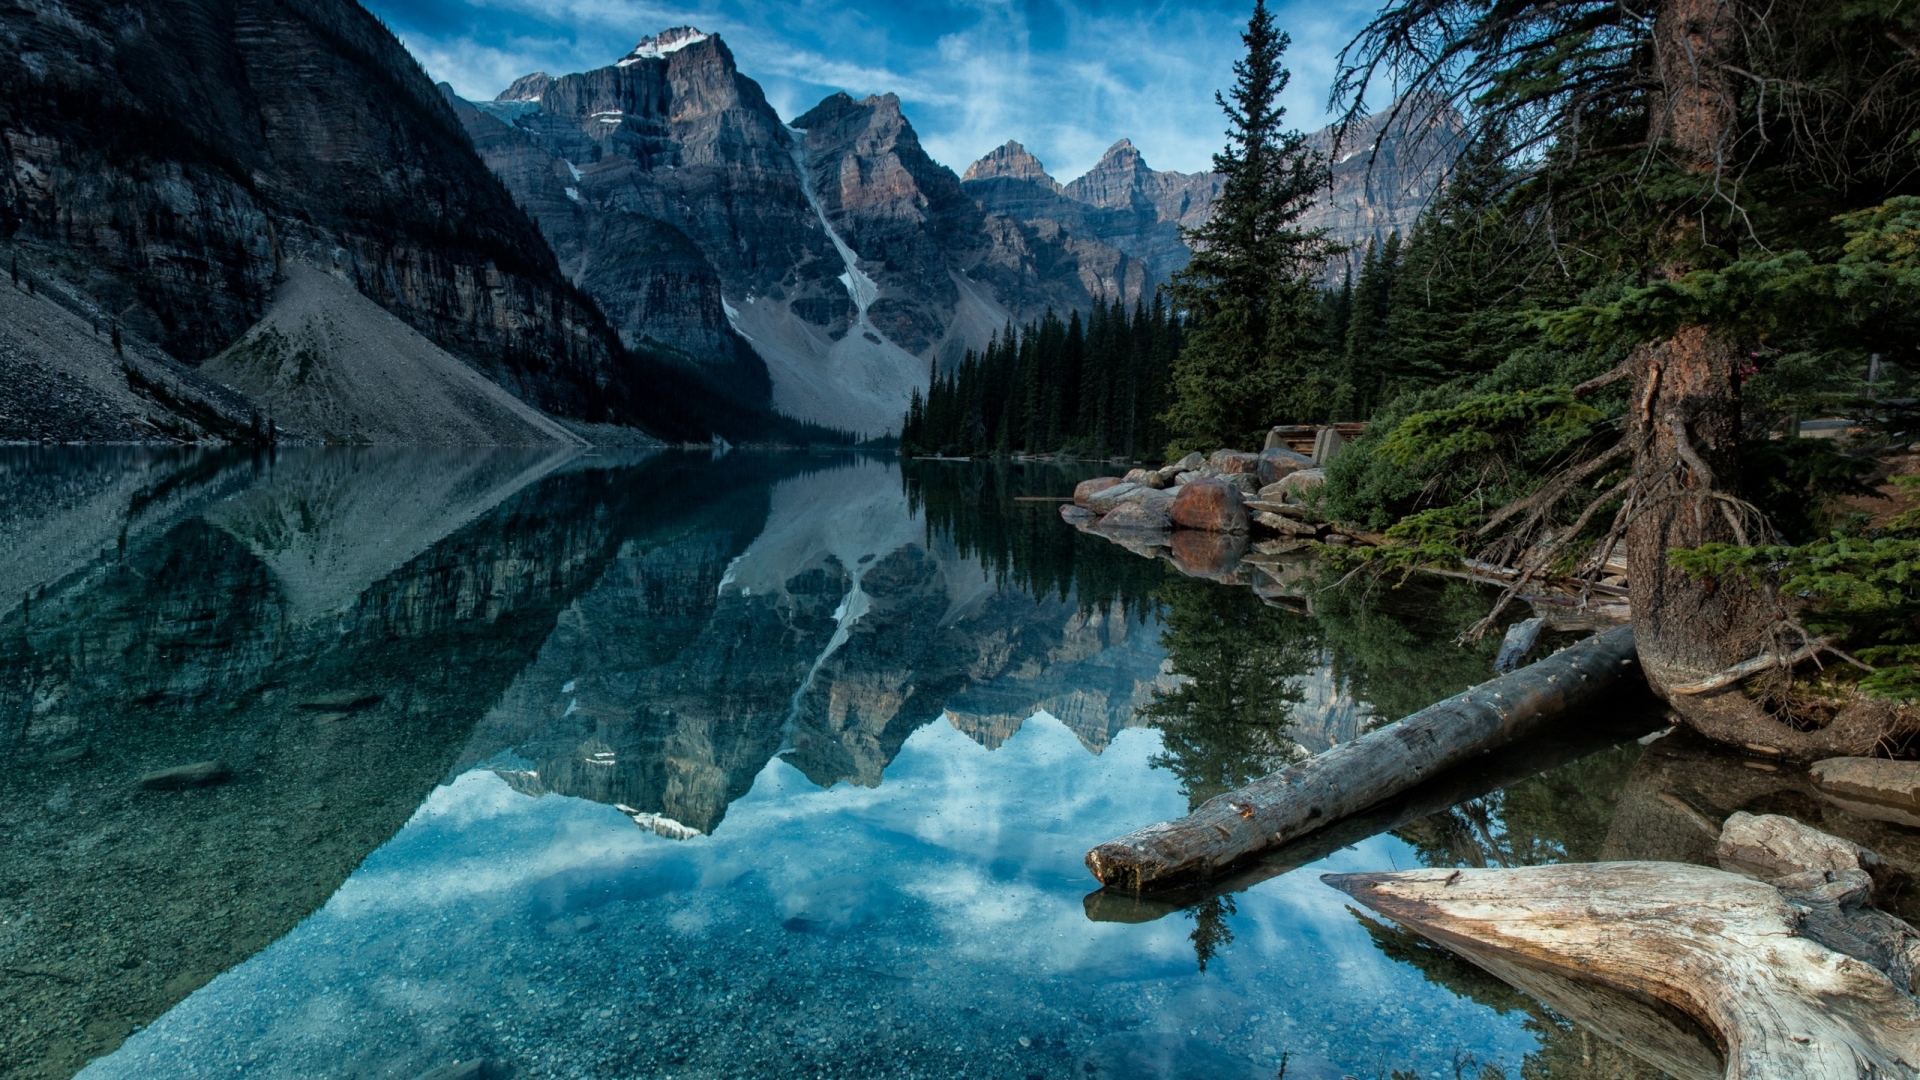 Moraine Lake Alberta Canada for 1920 x 1080 HDTV 1080p resolution